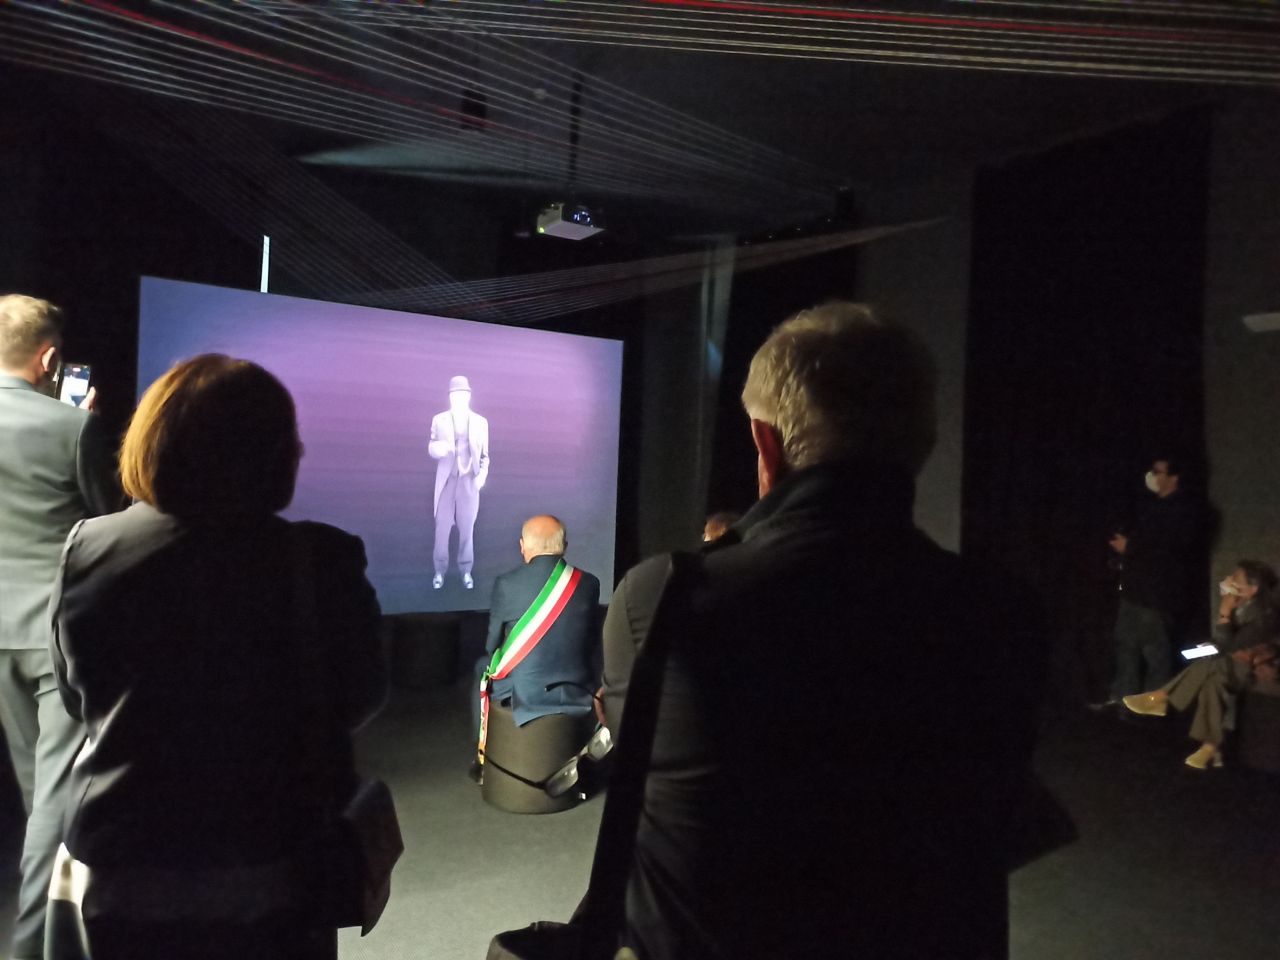 durante l'inaugurazione di Cresci d'Add, il sindaco e altri invitati guardano una proiezione su schermo